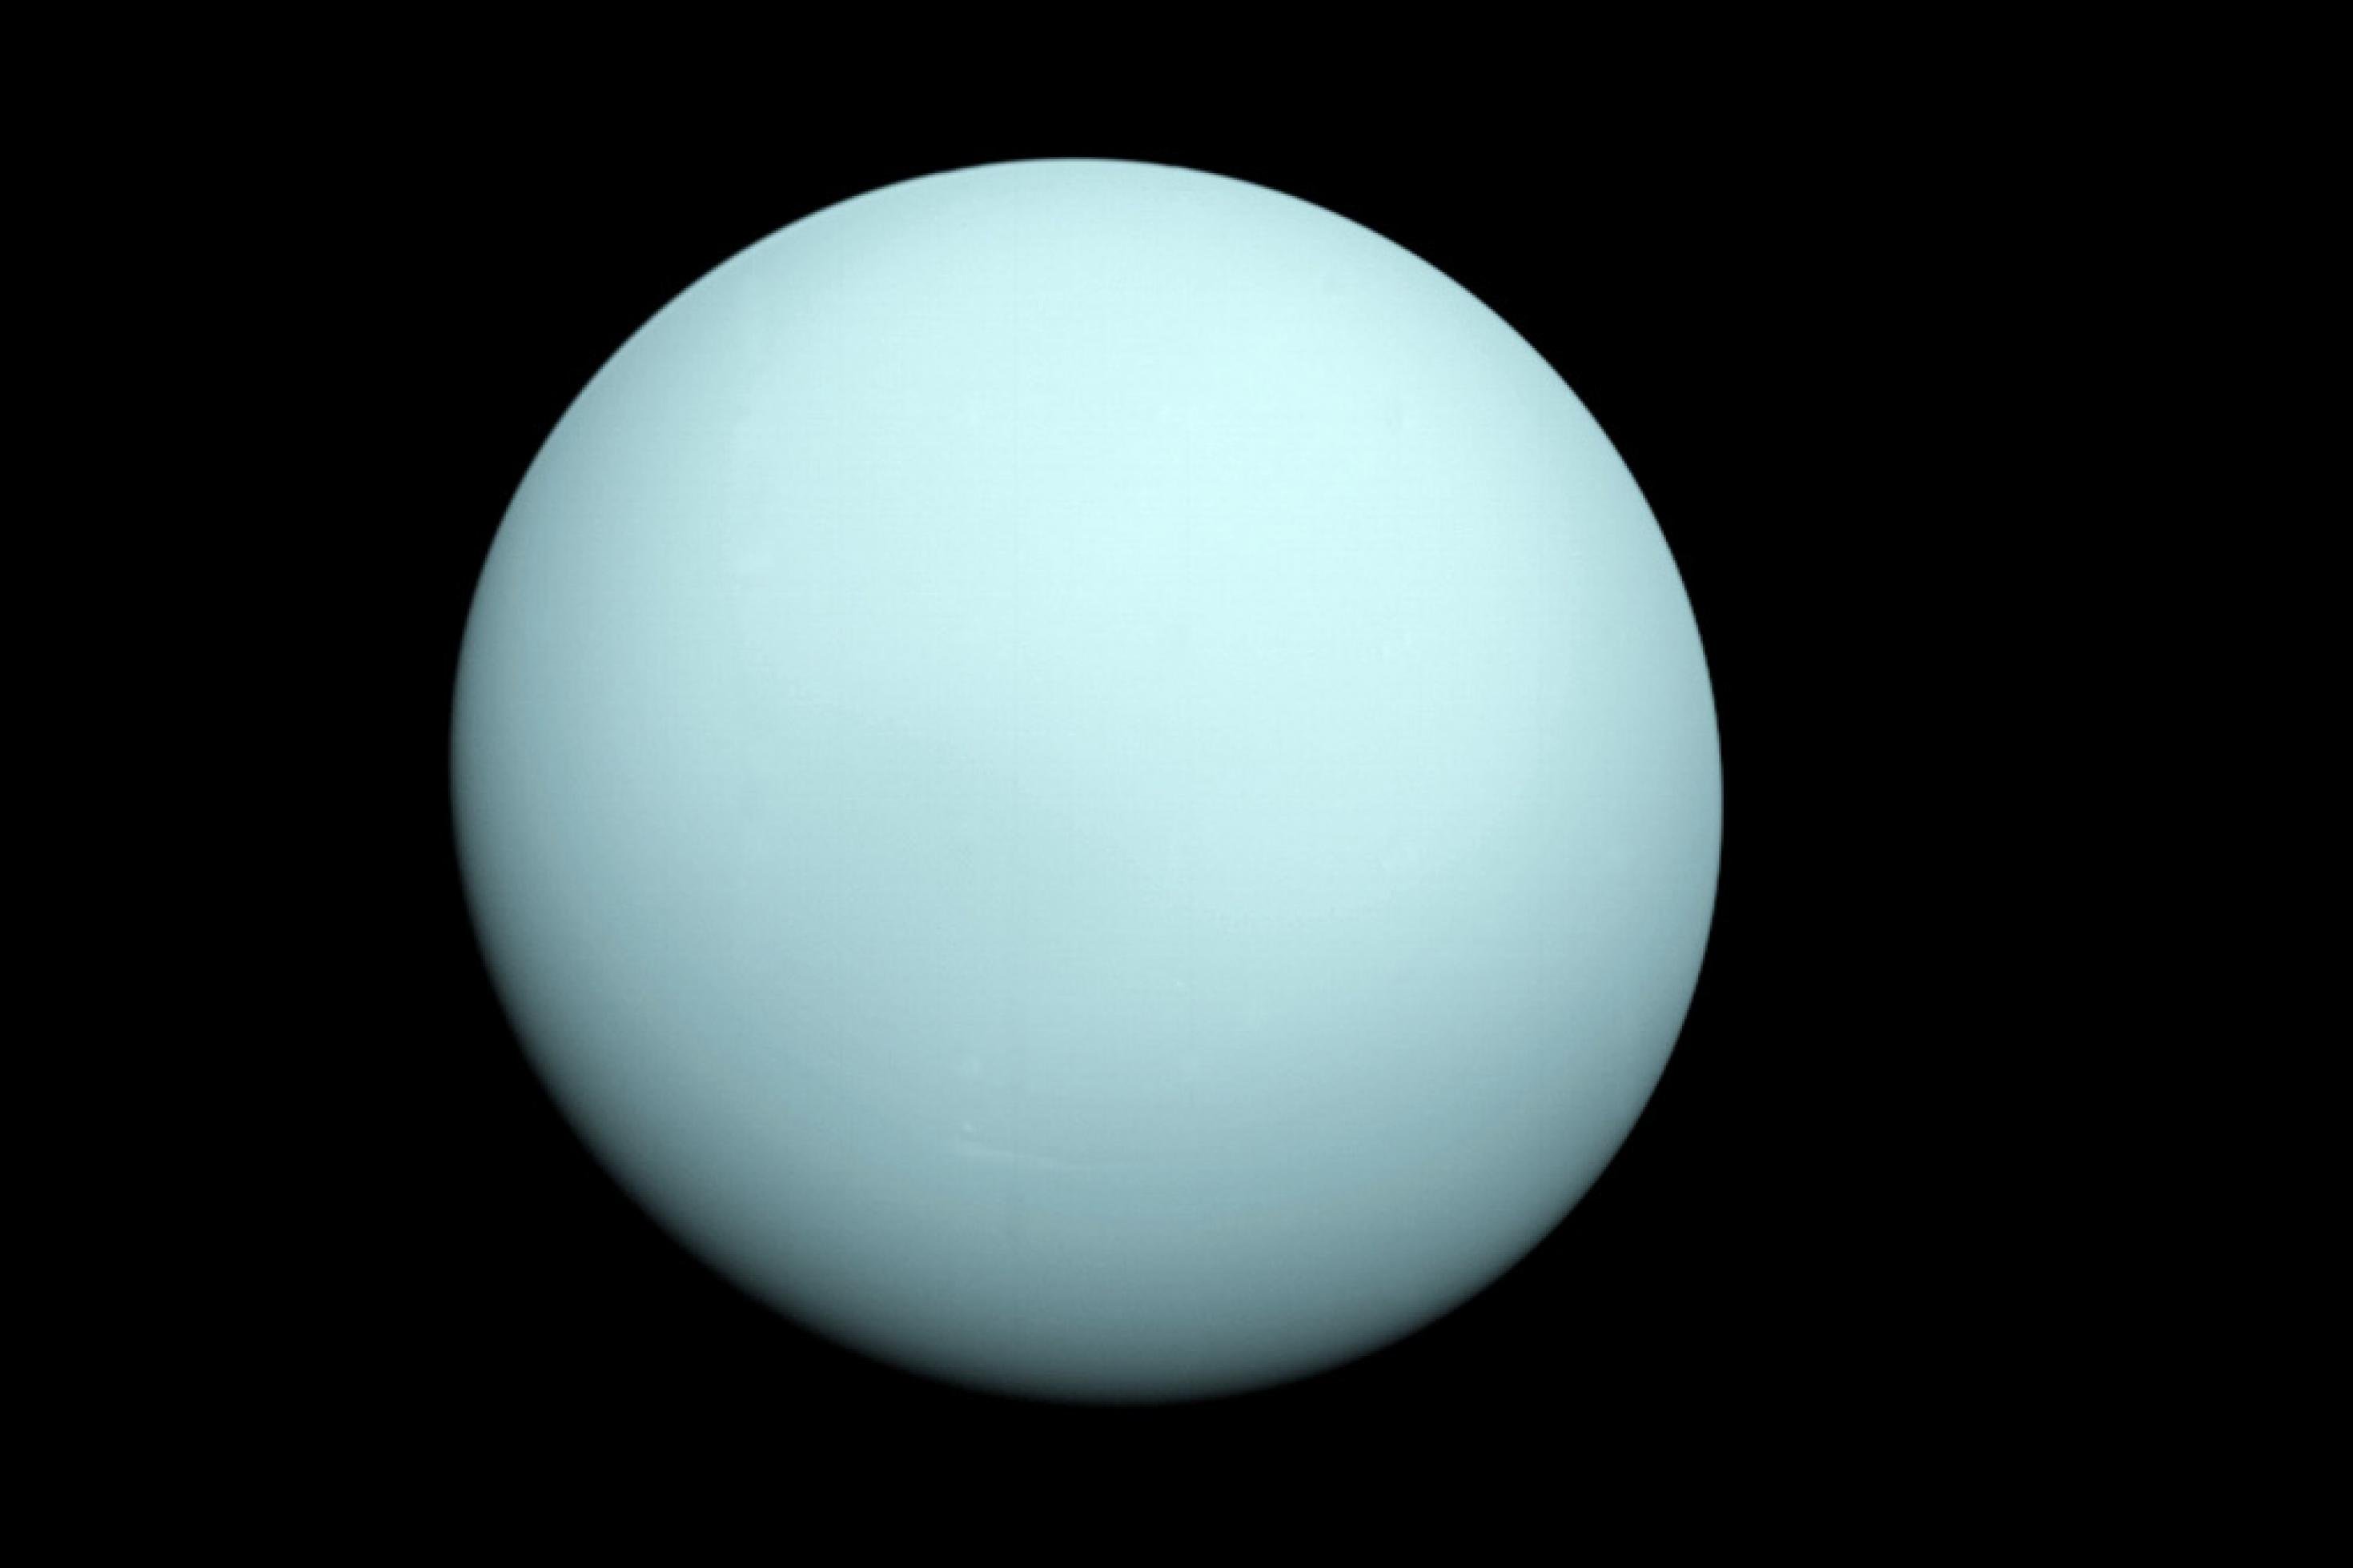 Der Gasriese Uranus, aufgenommen beim Vorbeiflug der NASA-Raumsonde Voyager 2 am 24. Januar 1986, entäuschte ein wenig, weil er wenig Details zeigt.